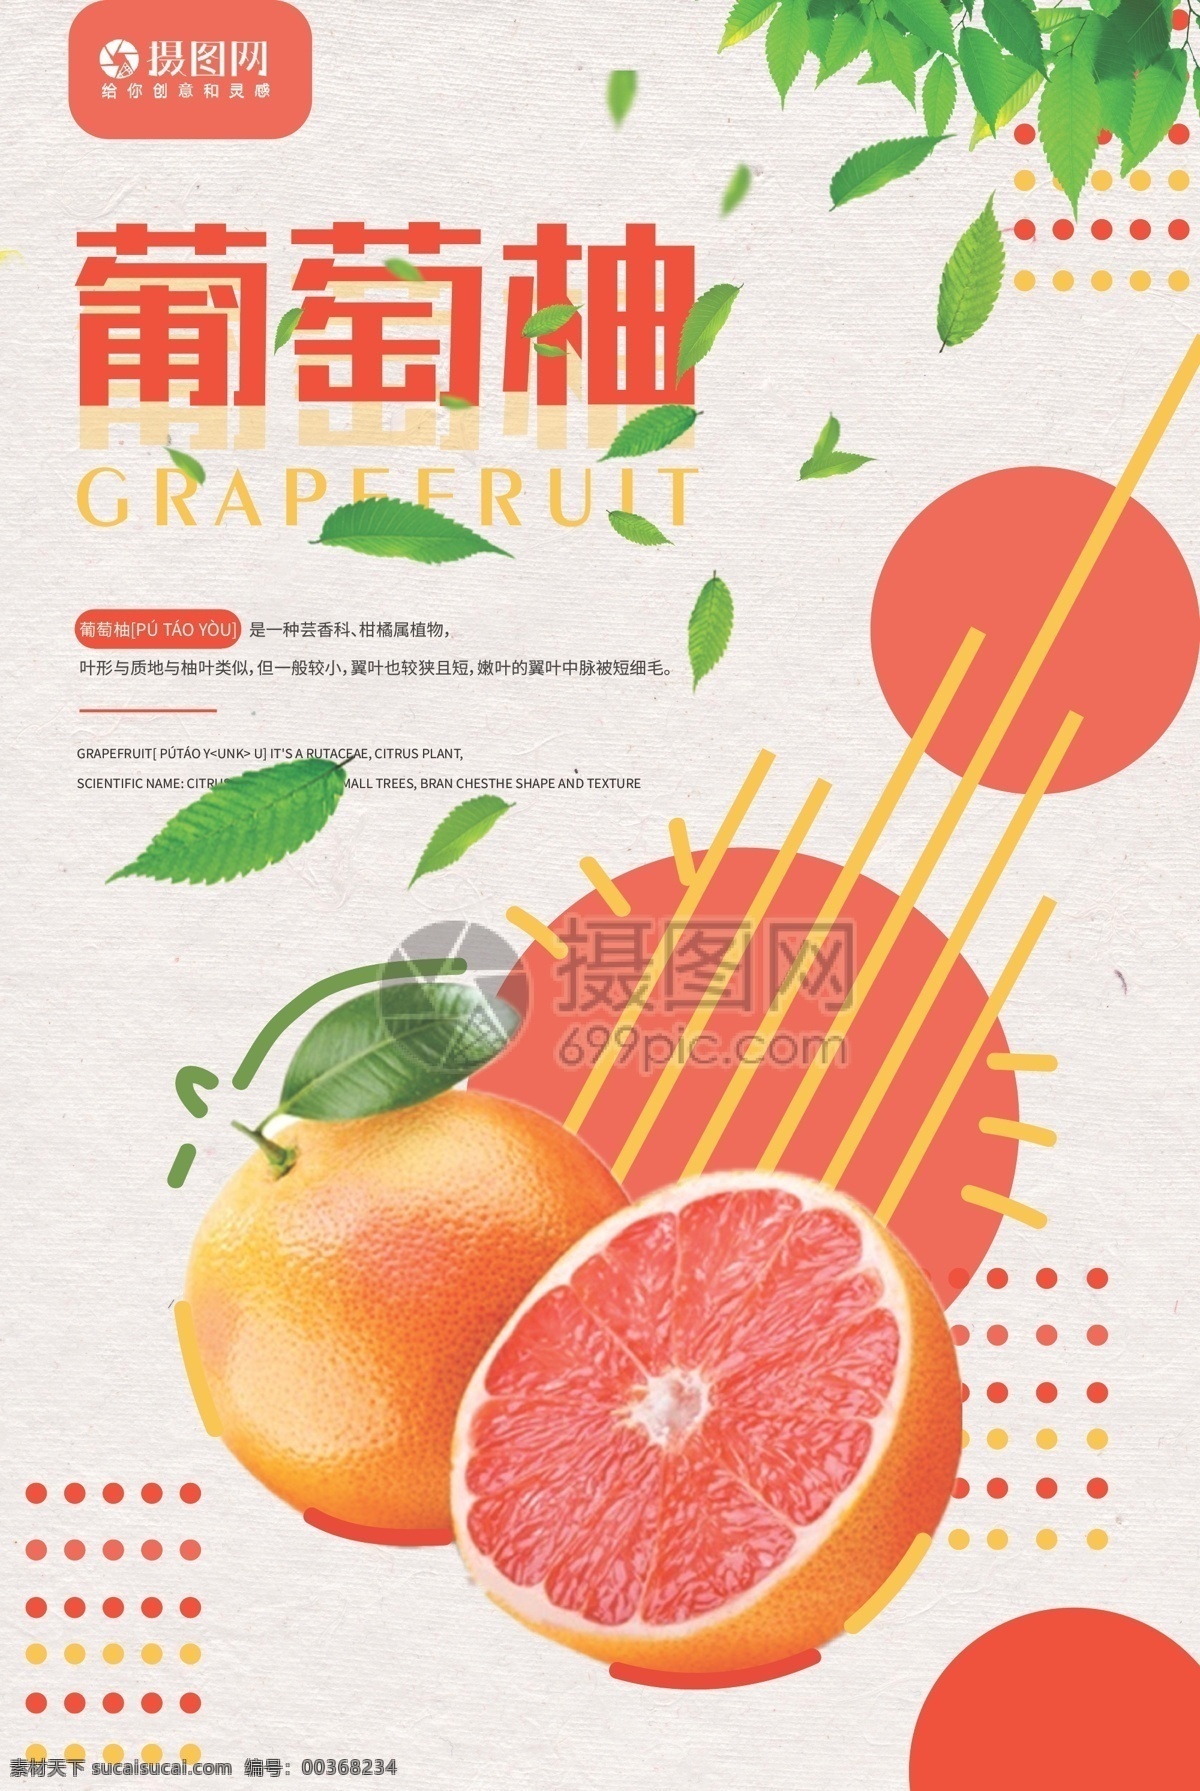 新鲜 葡萄柚 水果 促销 海报 西柚色 粘贴设计 宣传海报 营养 健康 绿色 维生素 黄色 红色 果肉 促销海报